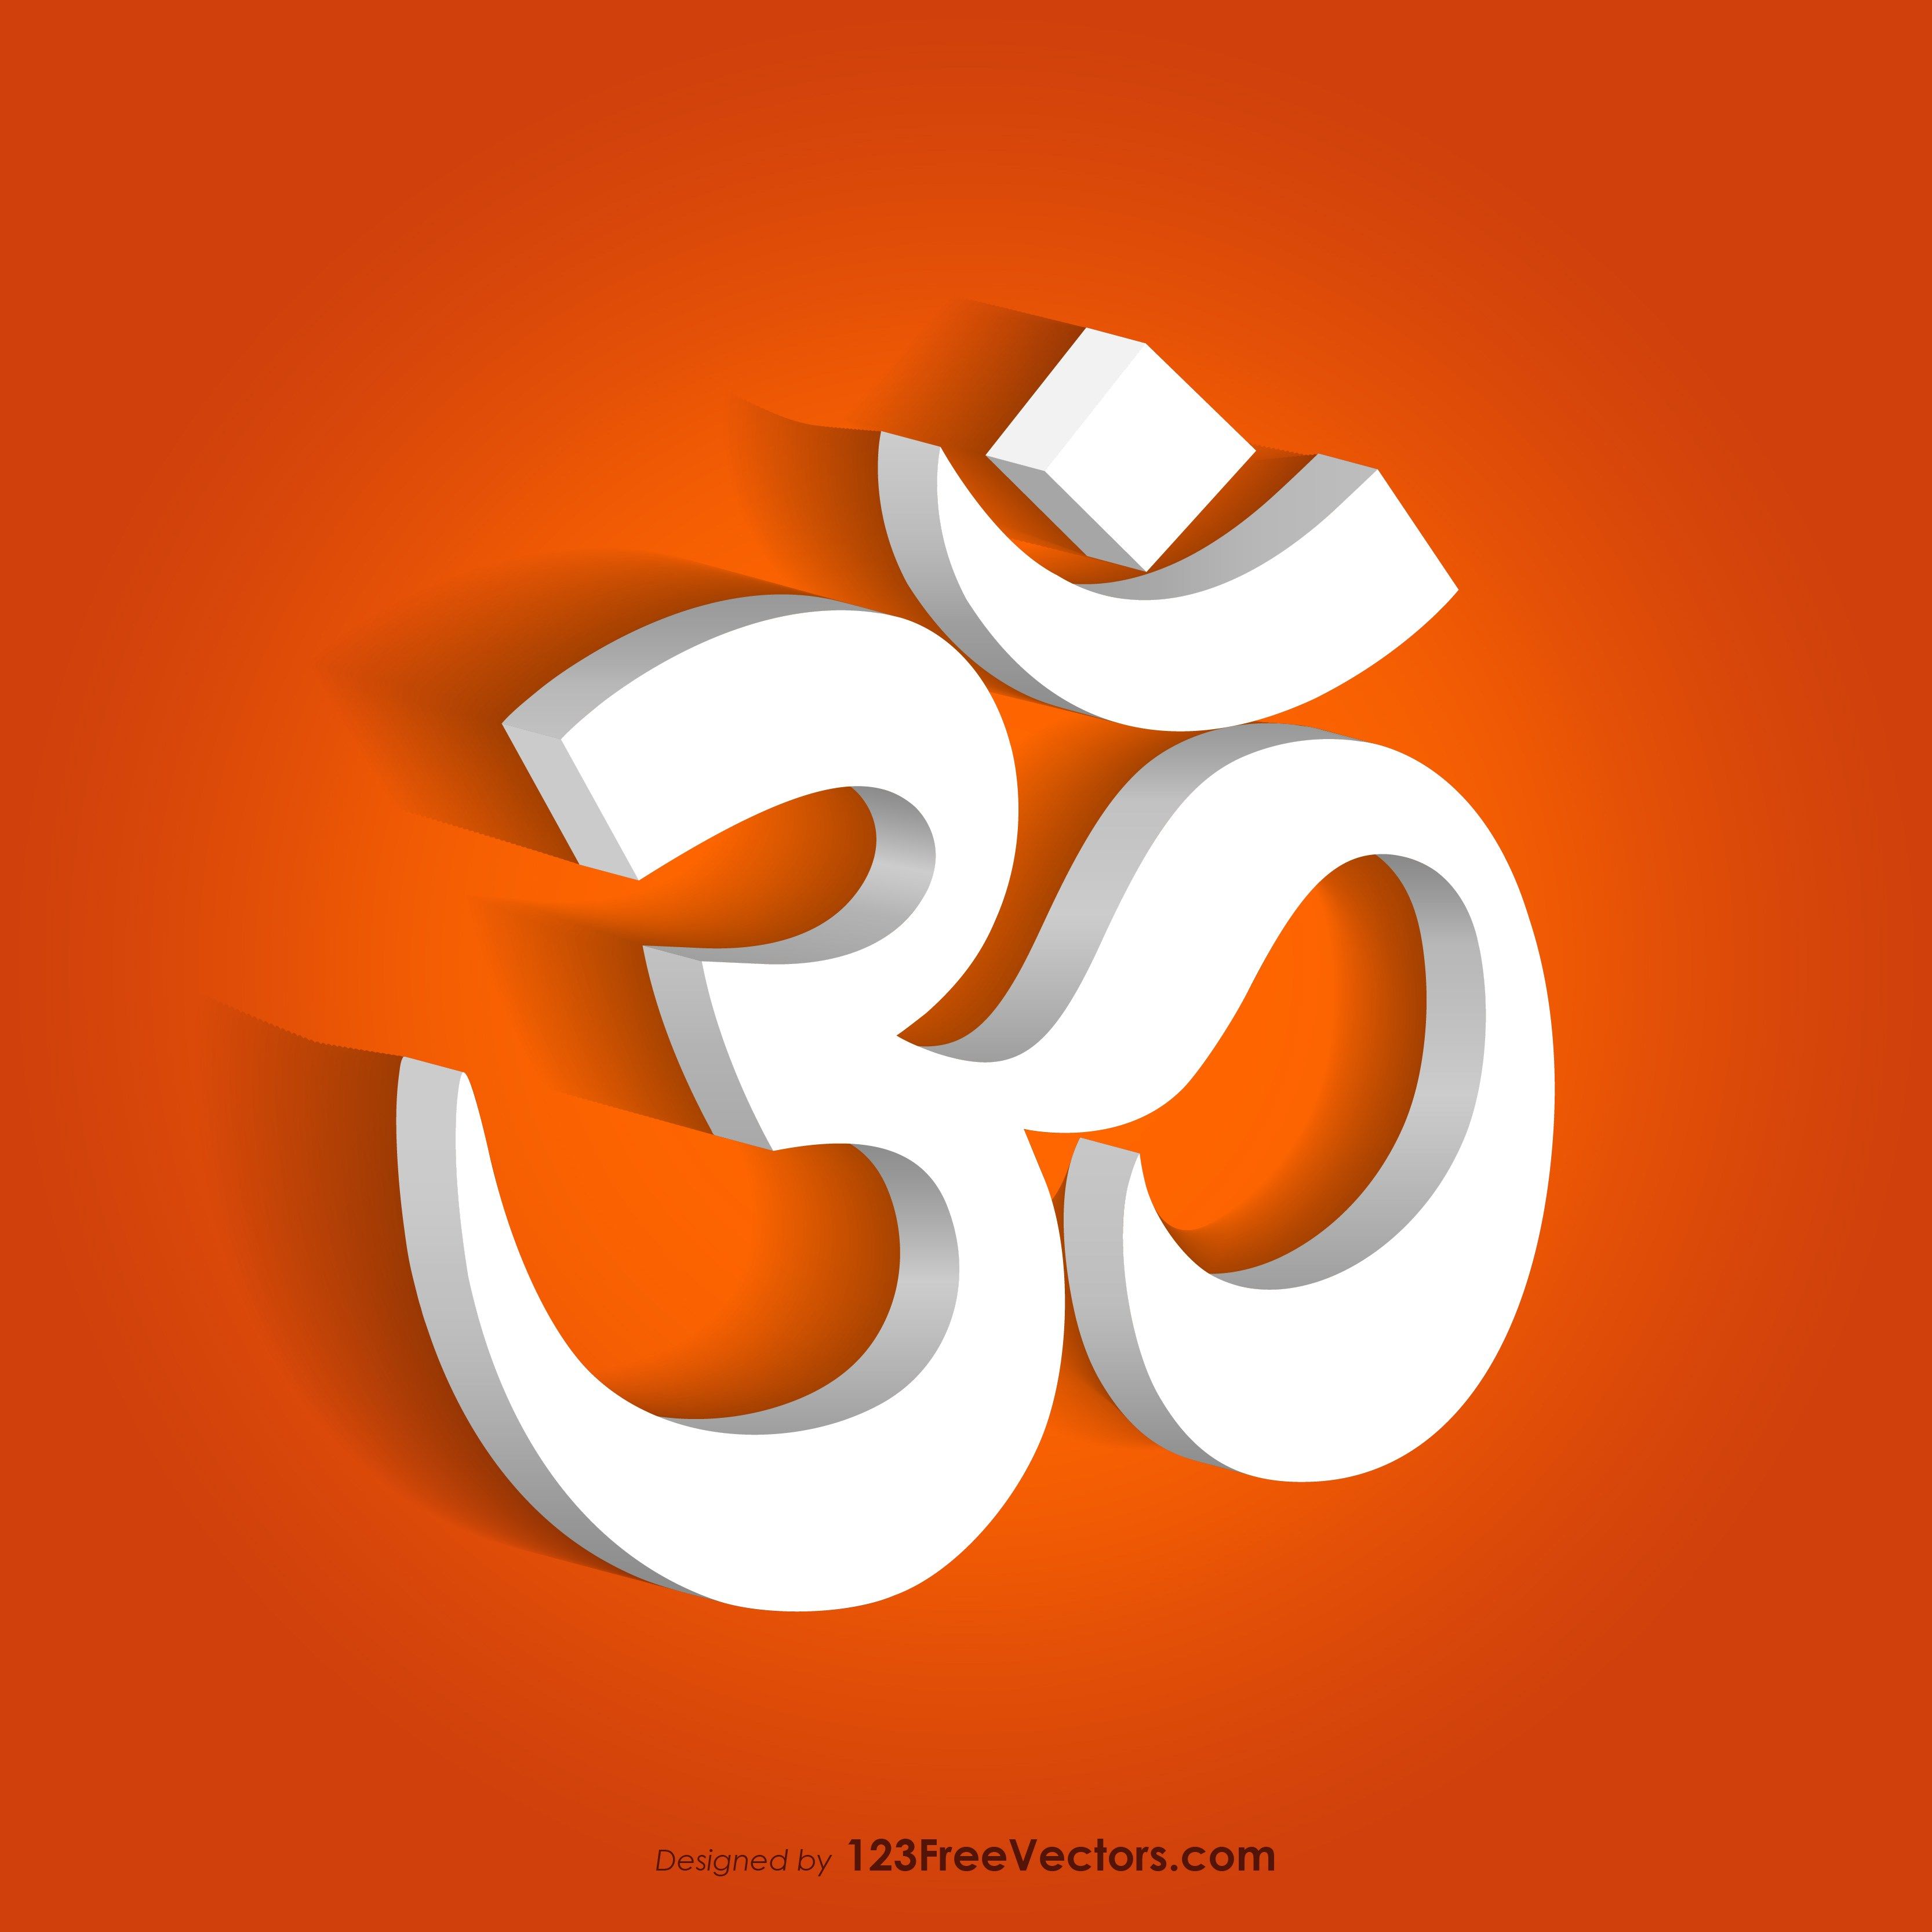 Om Background. Om symbol art, Om symbol wallpaper, Hindu symbols